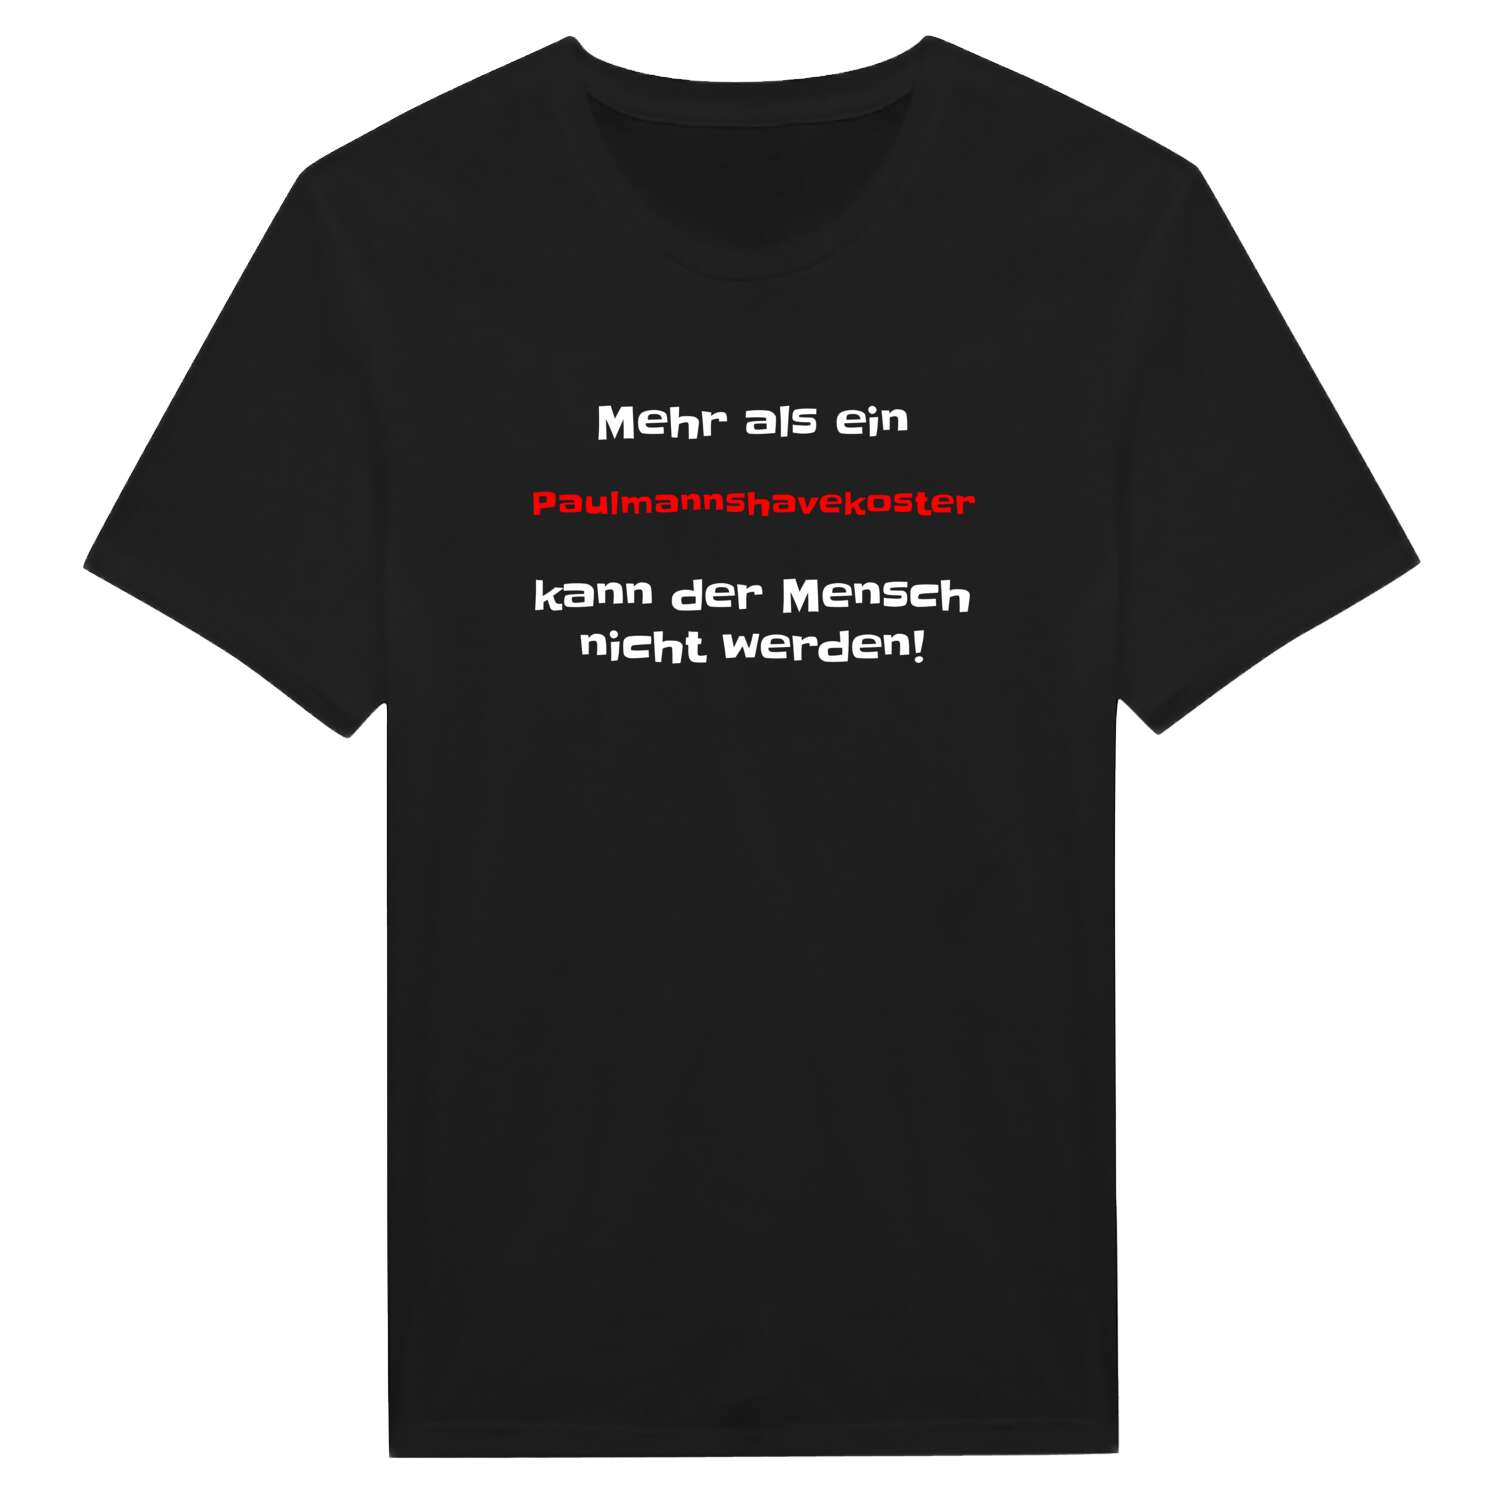 Paulmannshavekost T-Shirt »Mehr als ein«